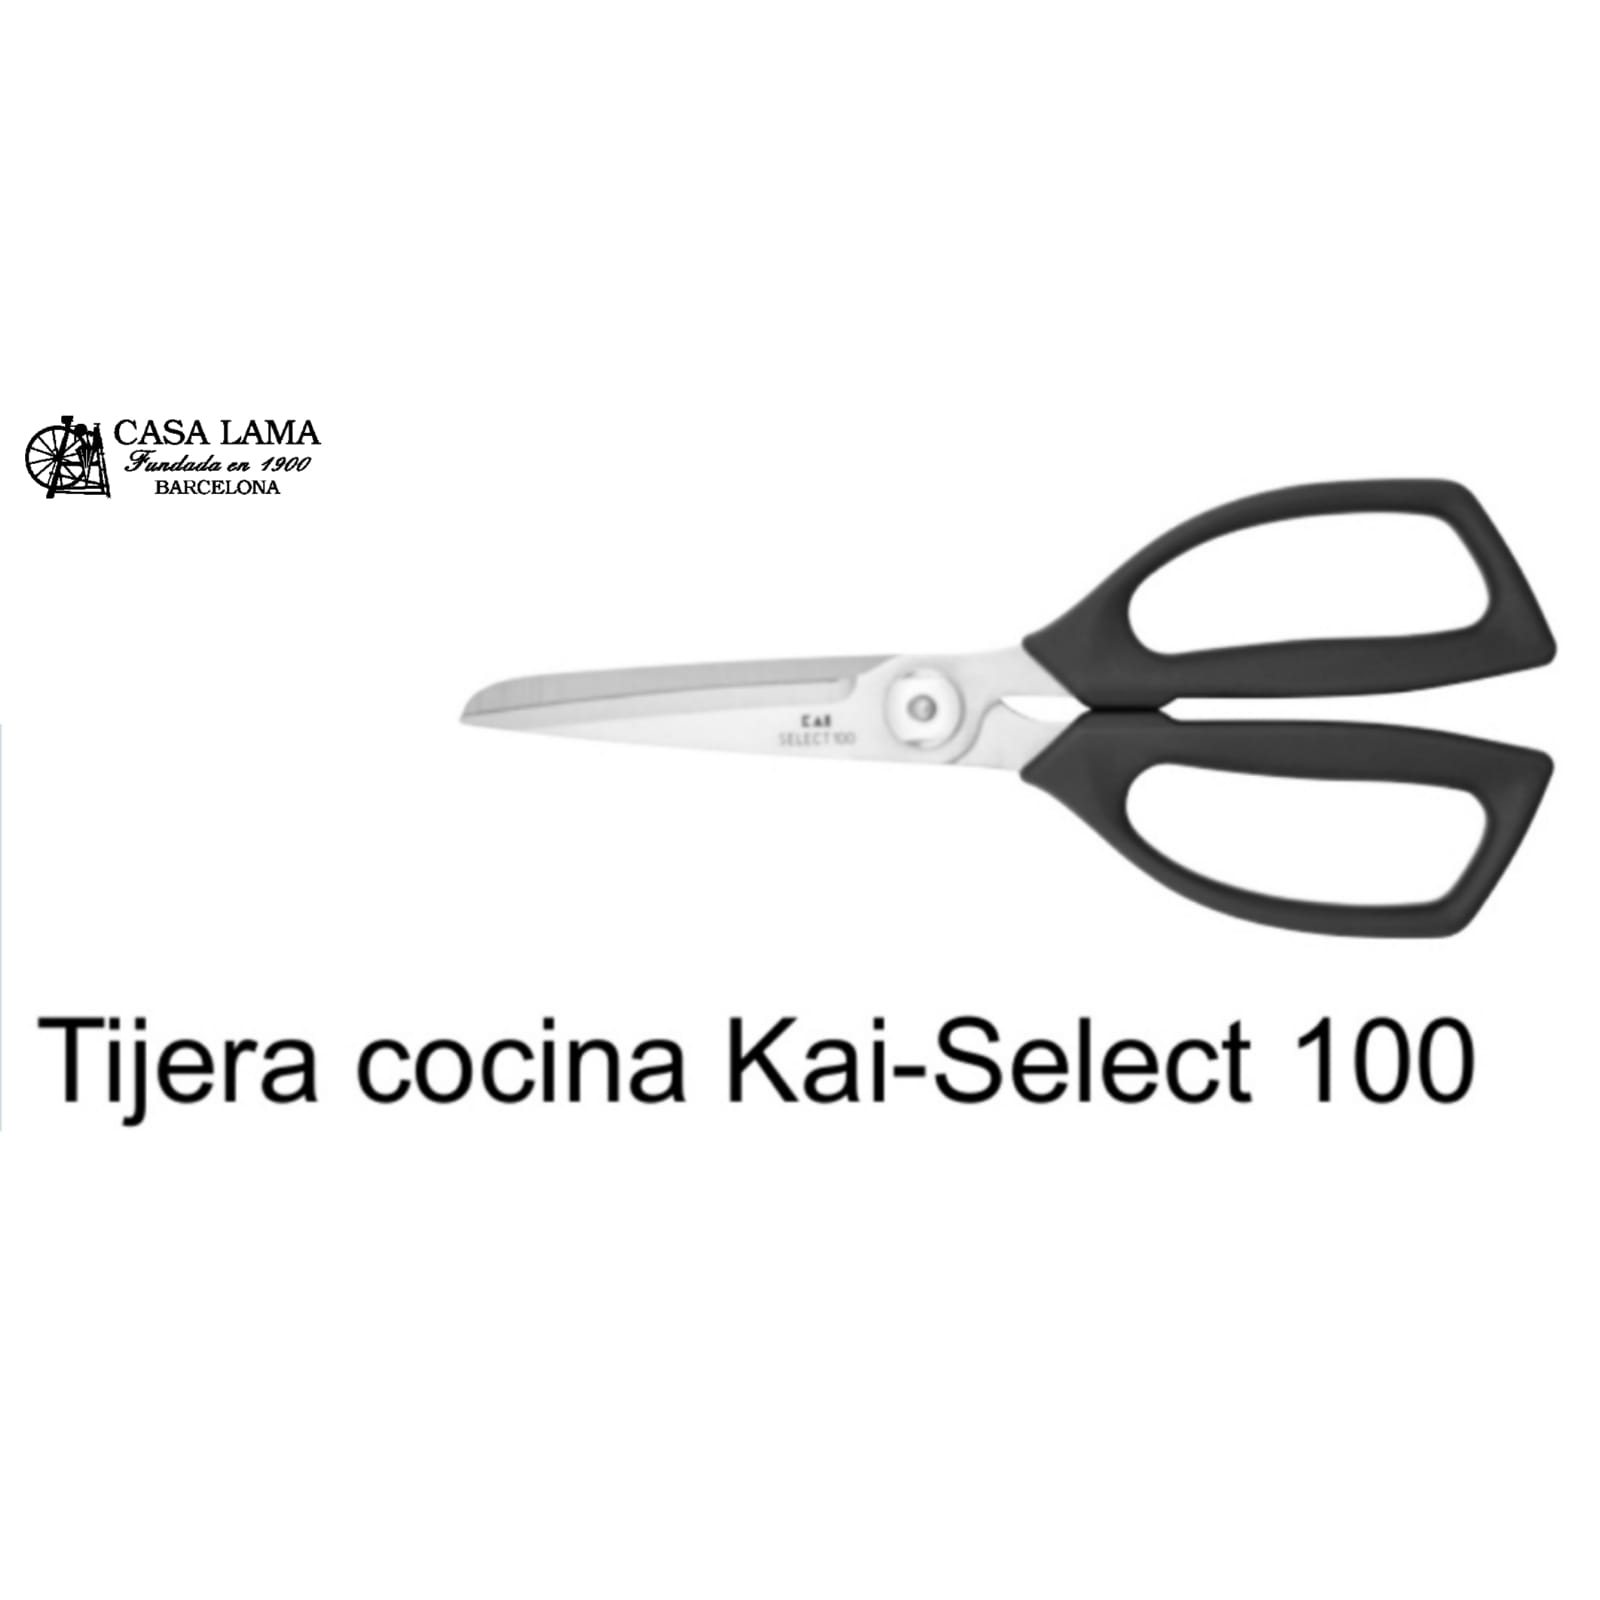 Tijera de cocina Kai-Select 100